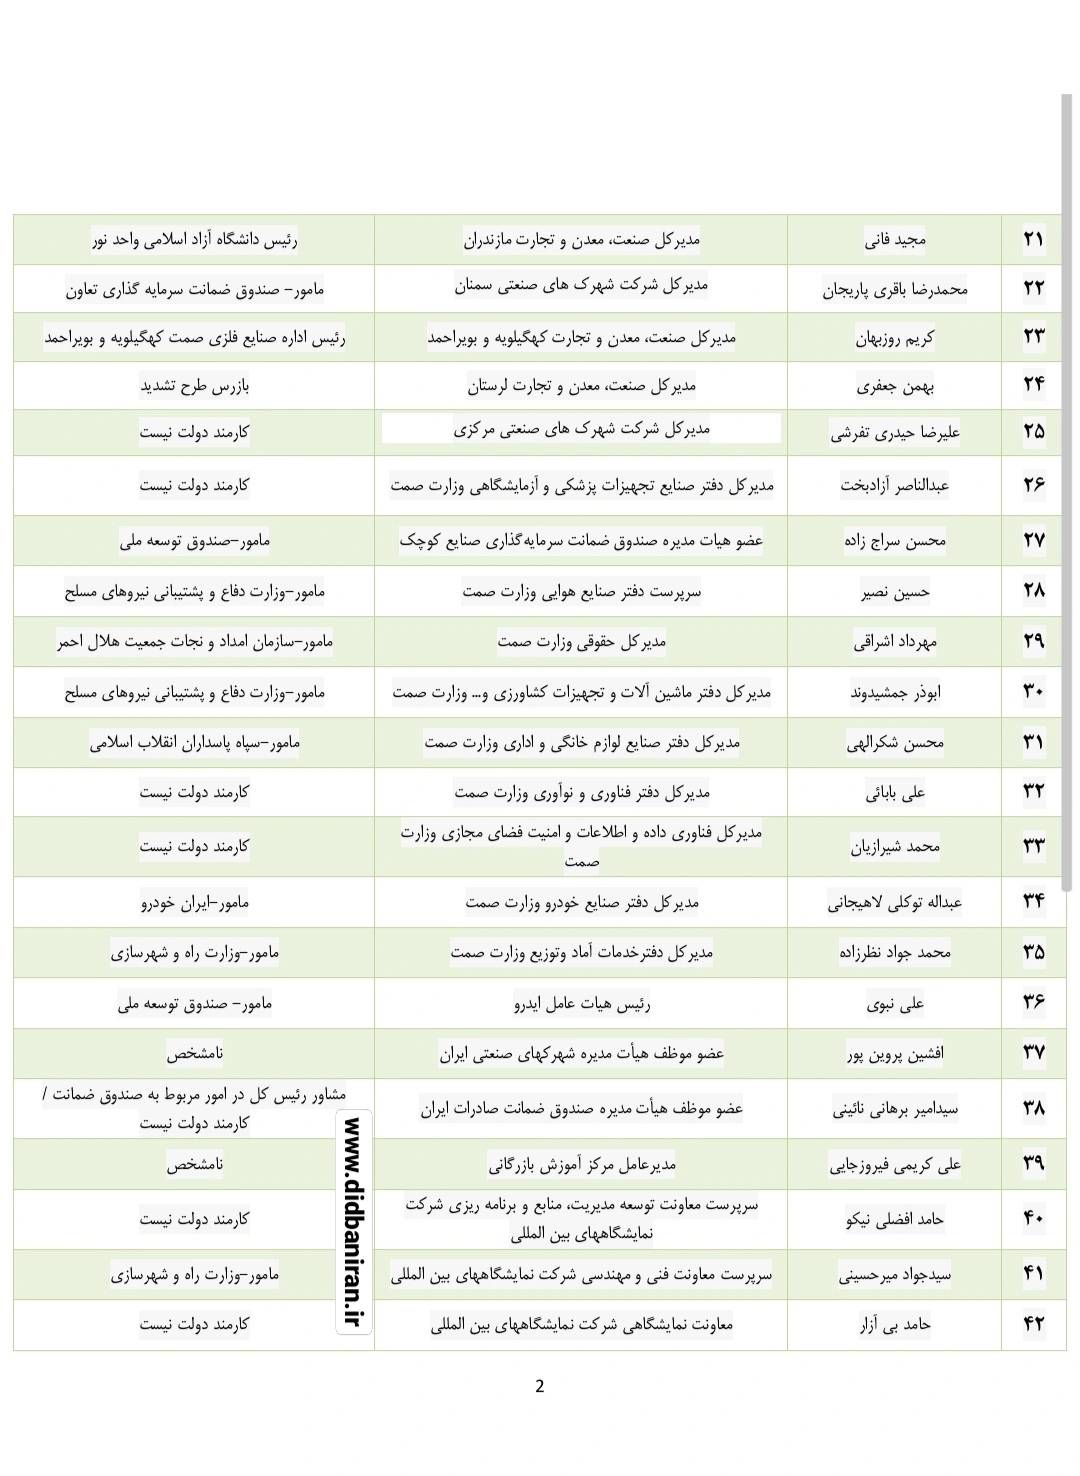 تکذیب لیست ادعایی ۵۰ نفره (  ۷۱ نفره سابق) از منتصبین فاطمی امین در وزارت صمت